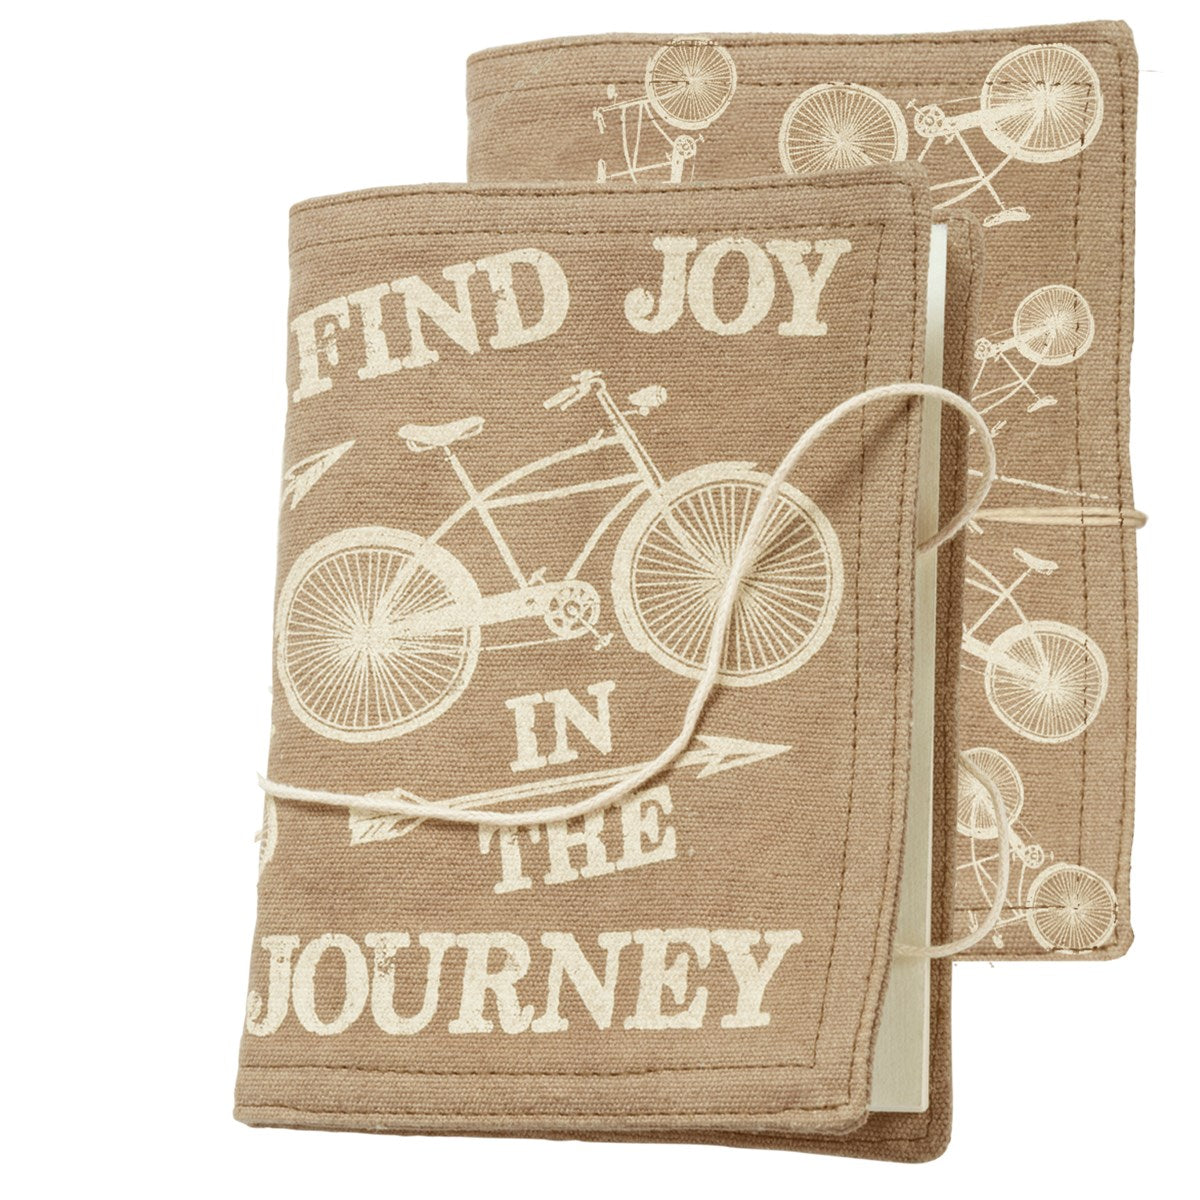 Find Joy Journal